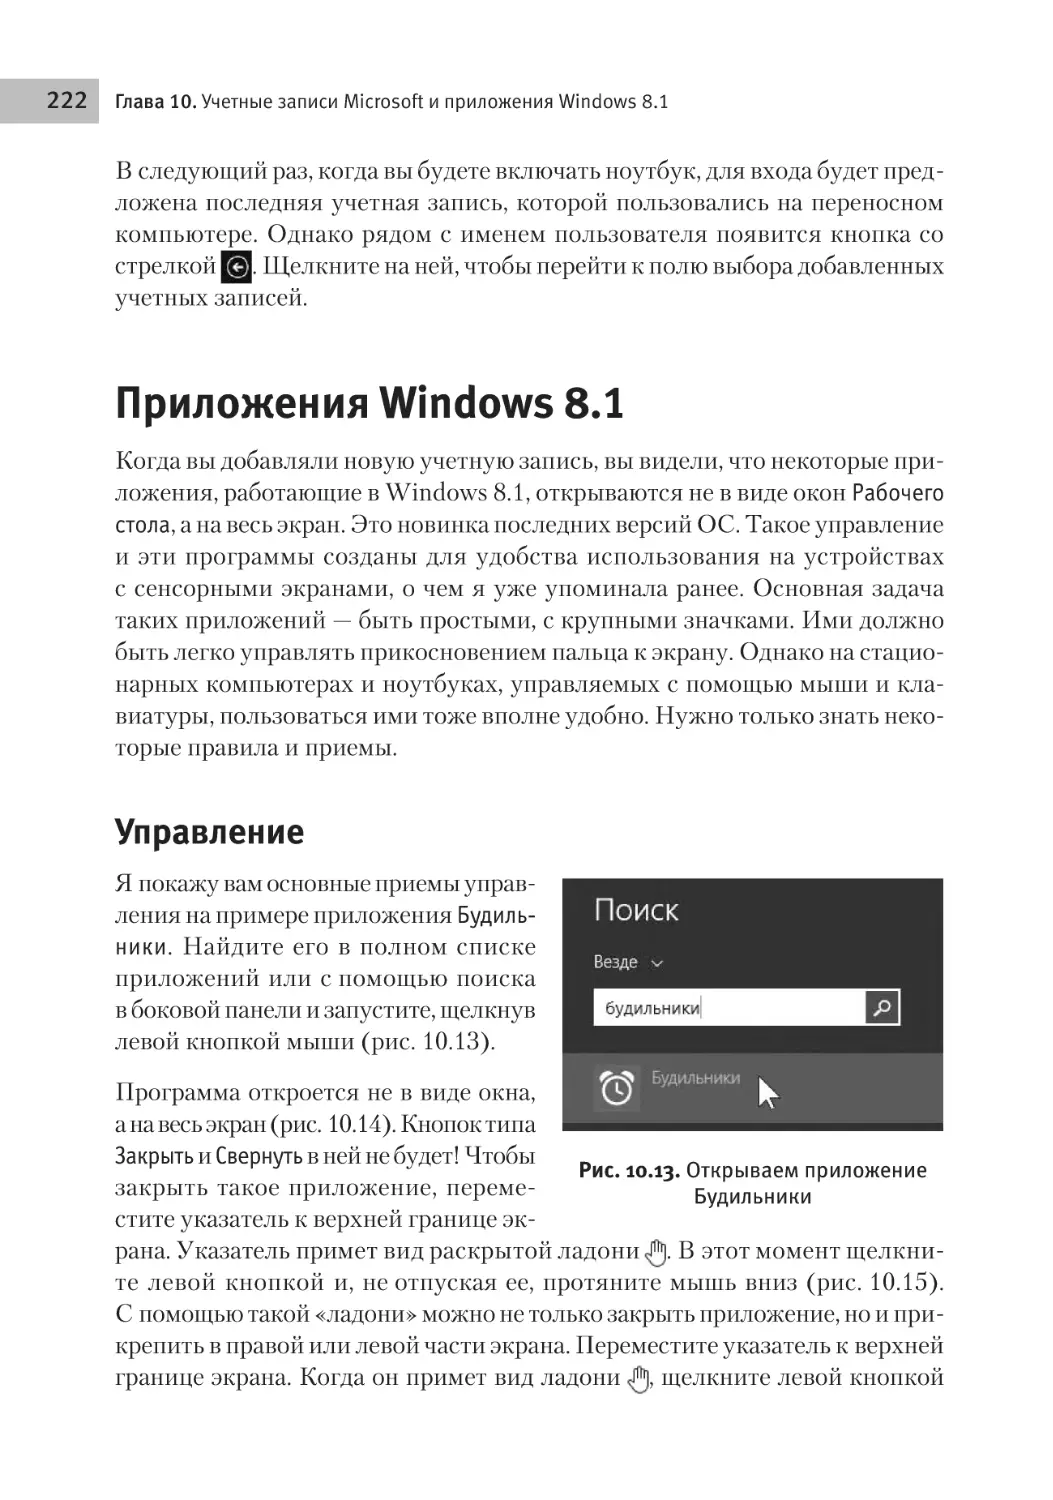 Приложения Windows 8.1
Управление